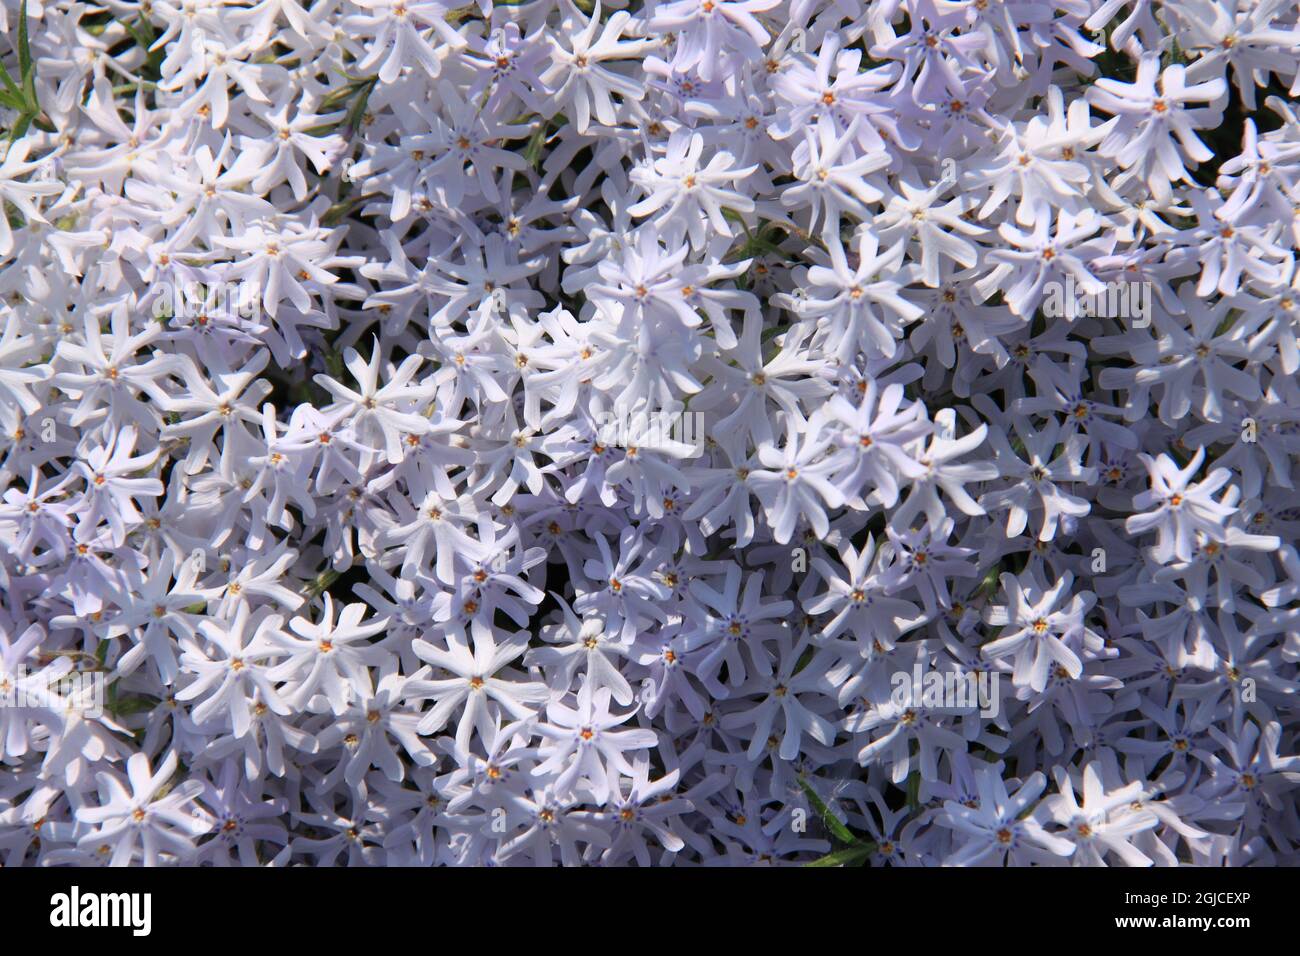 splendid blooming phlox flowers Stock Photo